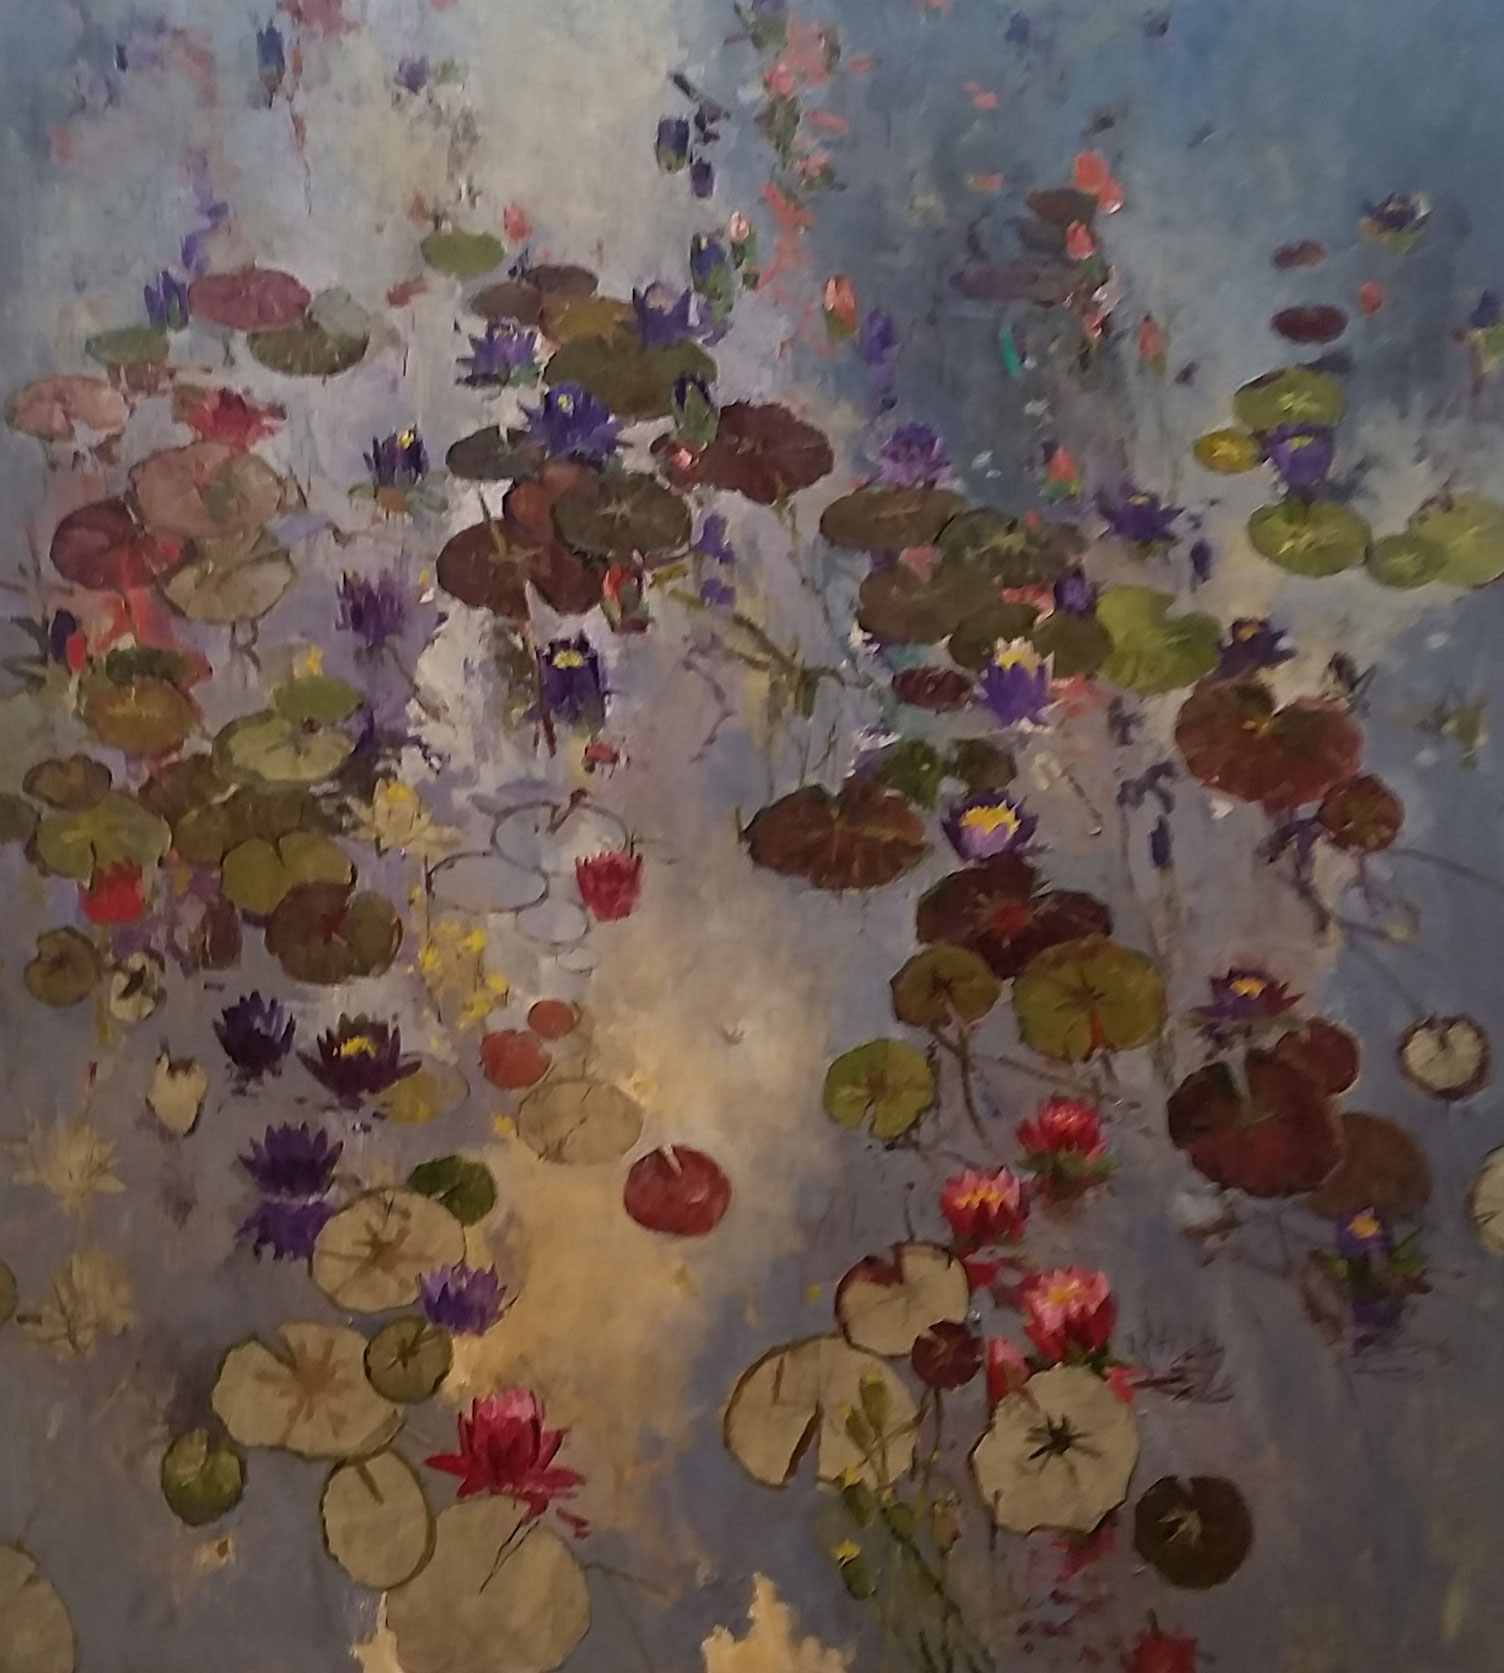 <h3> JOHN ALEXANDER</h3></br>
                            <h4><em>Untitled</em></h4></br>
                            2015
                            <br /><br />
                           	Oil on canvas
                            </br>
                            54 x 48 inches
                            <br /><br />